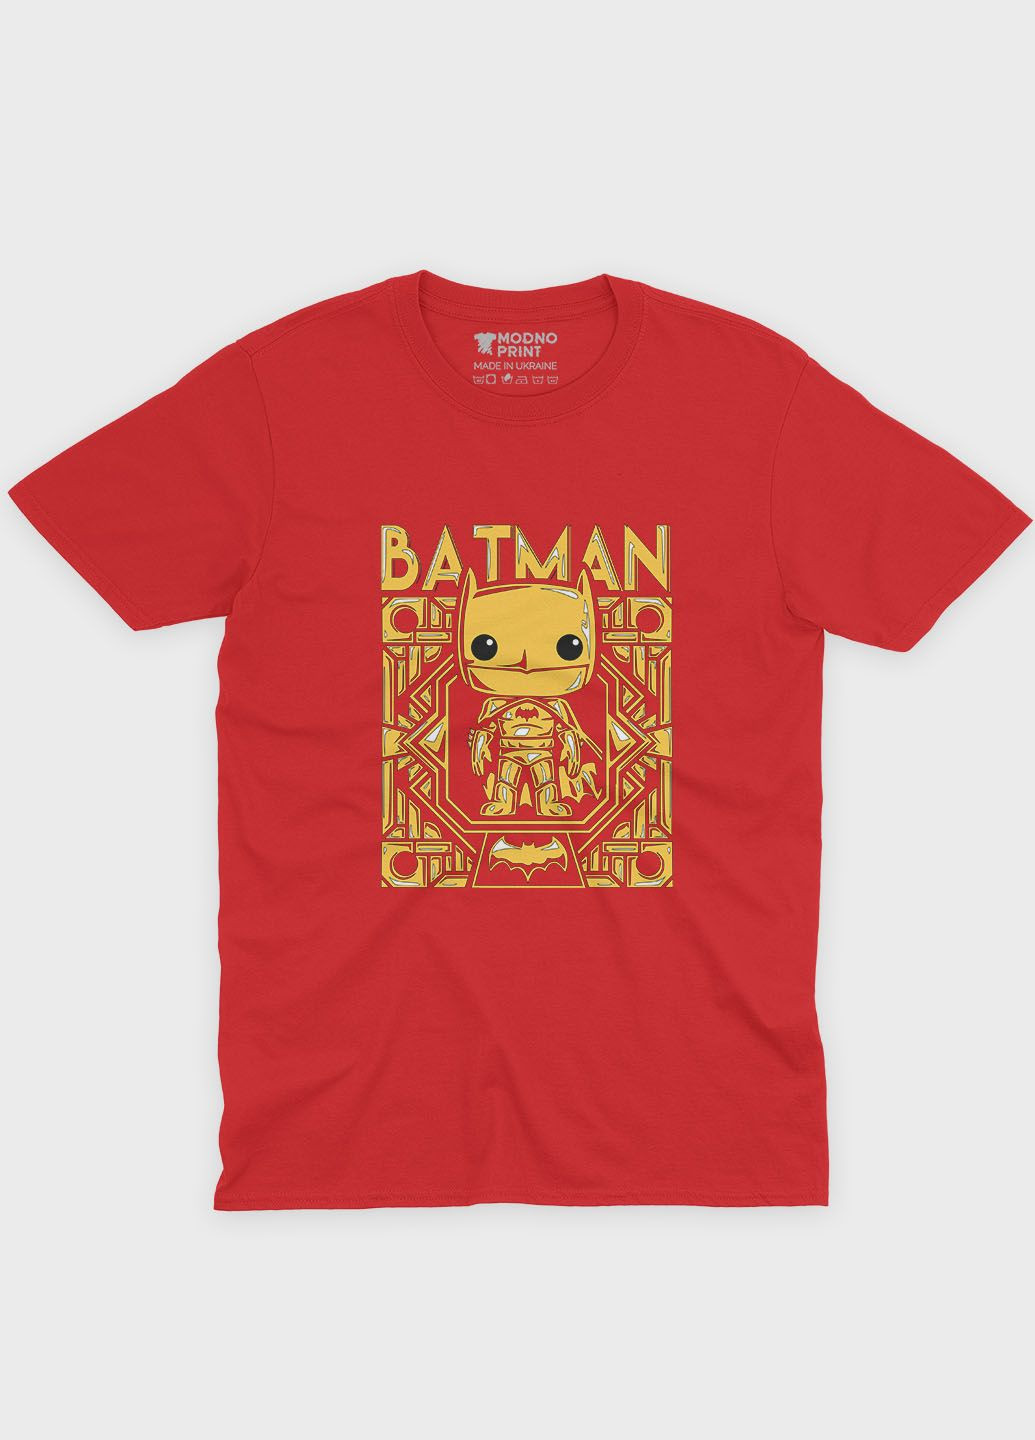 Красная демисезонная футболка для девочки с принтом супергероя - бэтмен (ts001-1-sre-006-003-004-g) Modno